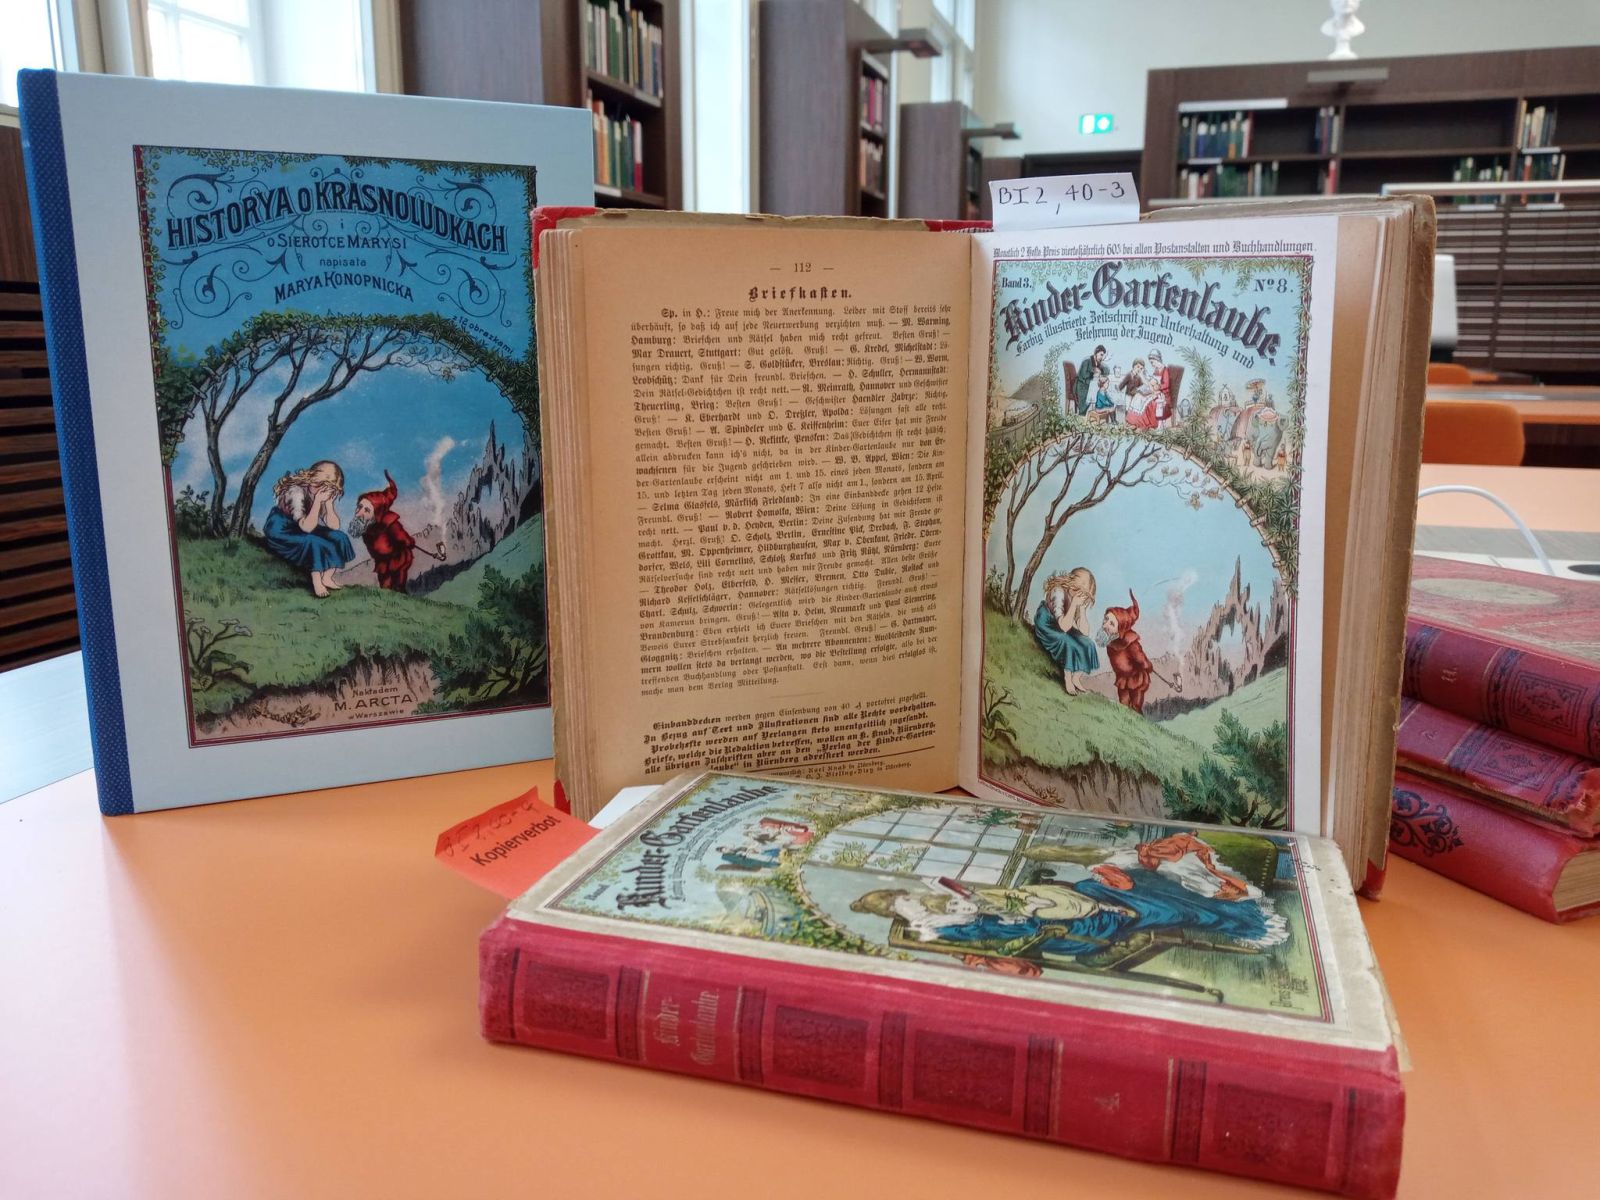 Najważniejszy numer „Kinder-Gartenlaube”, którego ilustracja okładkowa stała się podstawą dla okładki wydania Arcta, zestawiona z reprintem „O krasnoludkach...” z 2016 roku.